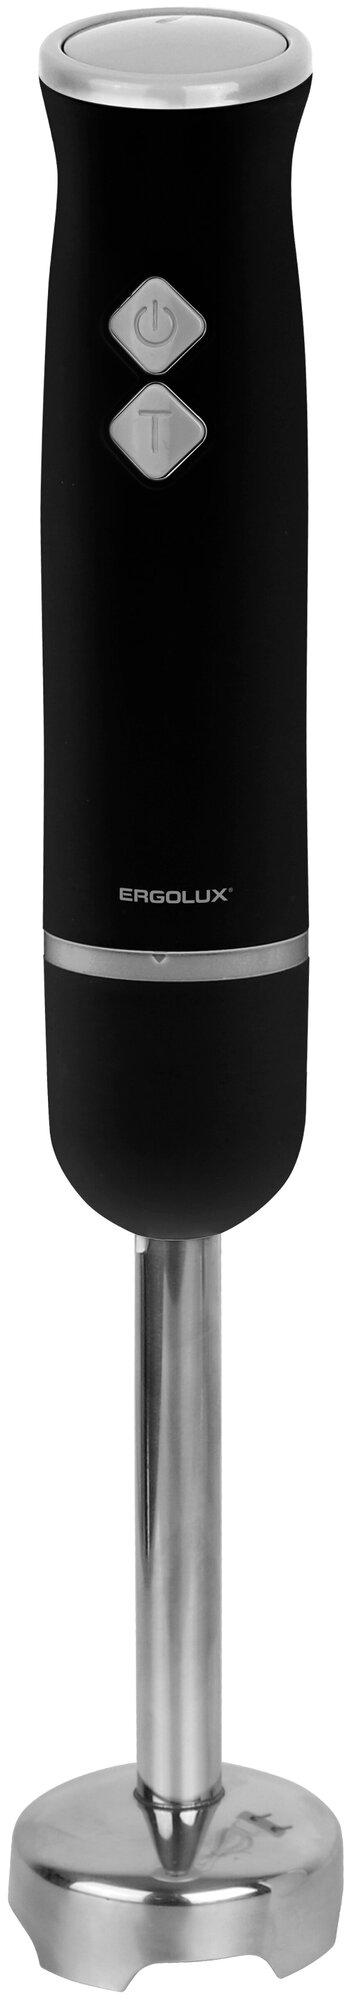 ERGOLUX ELX-HB03-C72 черн-хром (блендер нерж. сталь 2 скорости 300 Вт 220-240В)